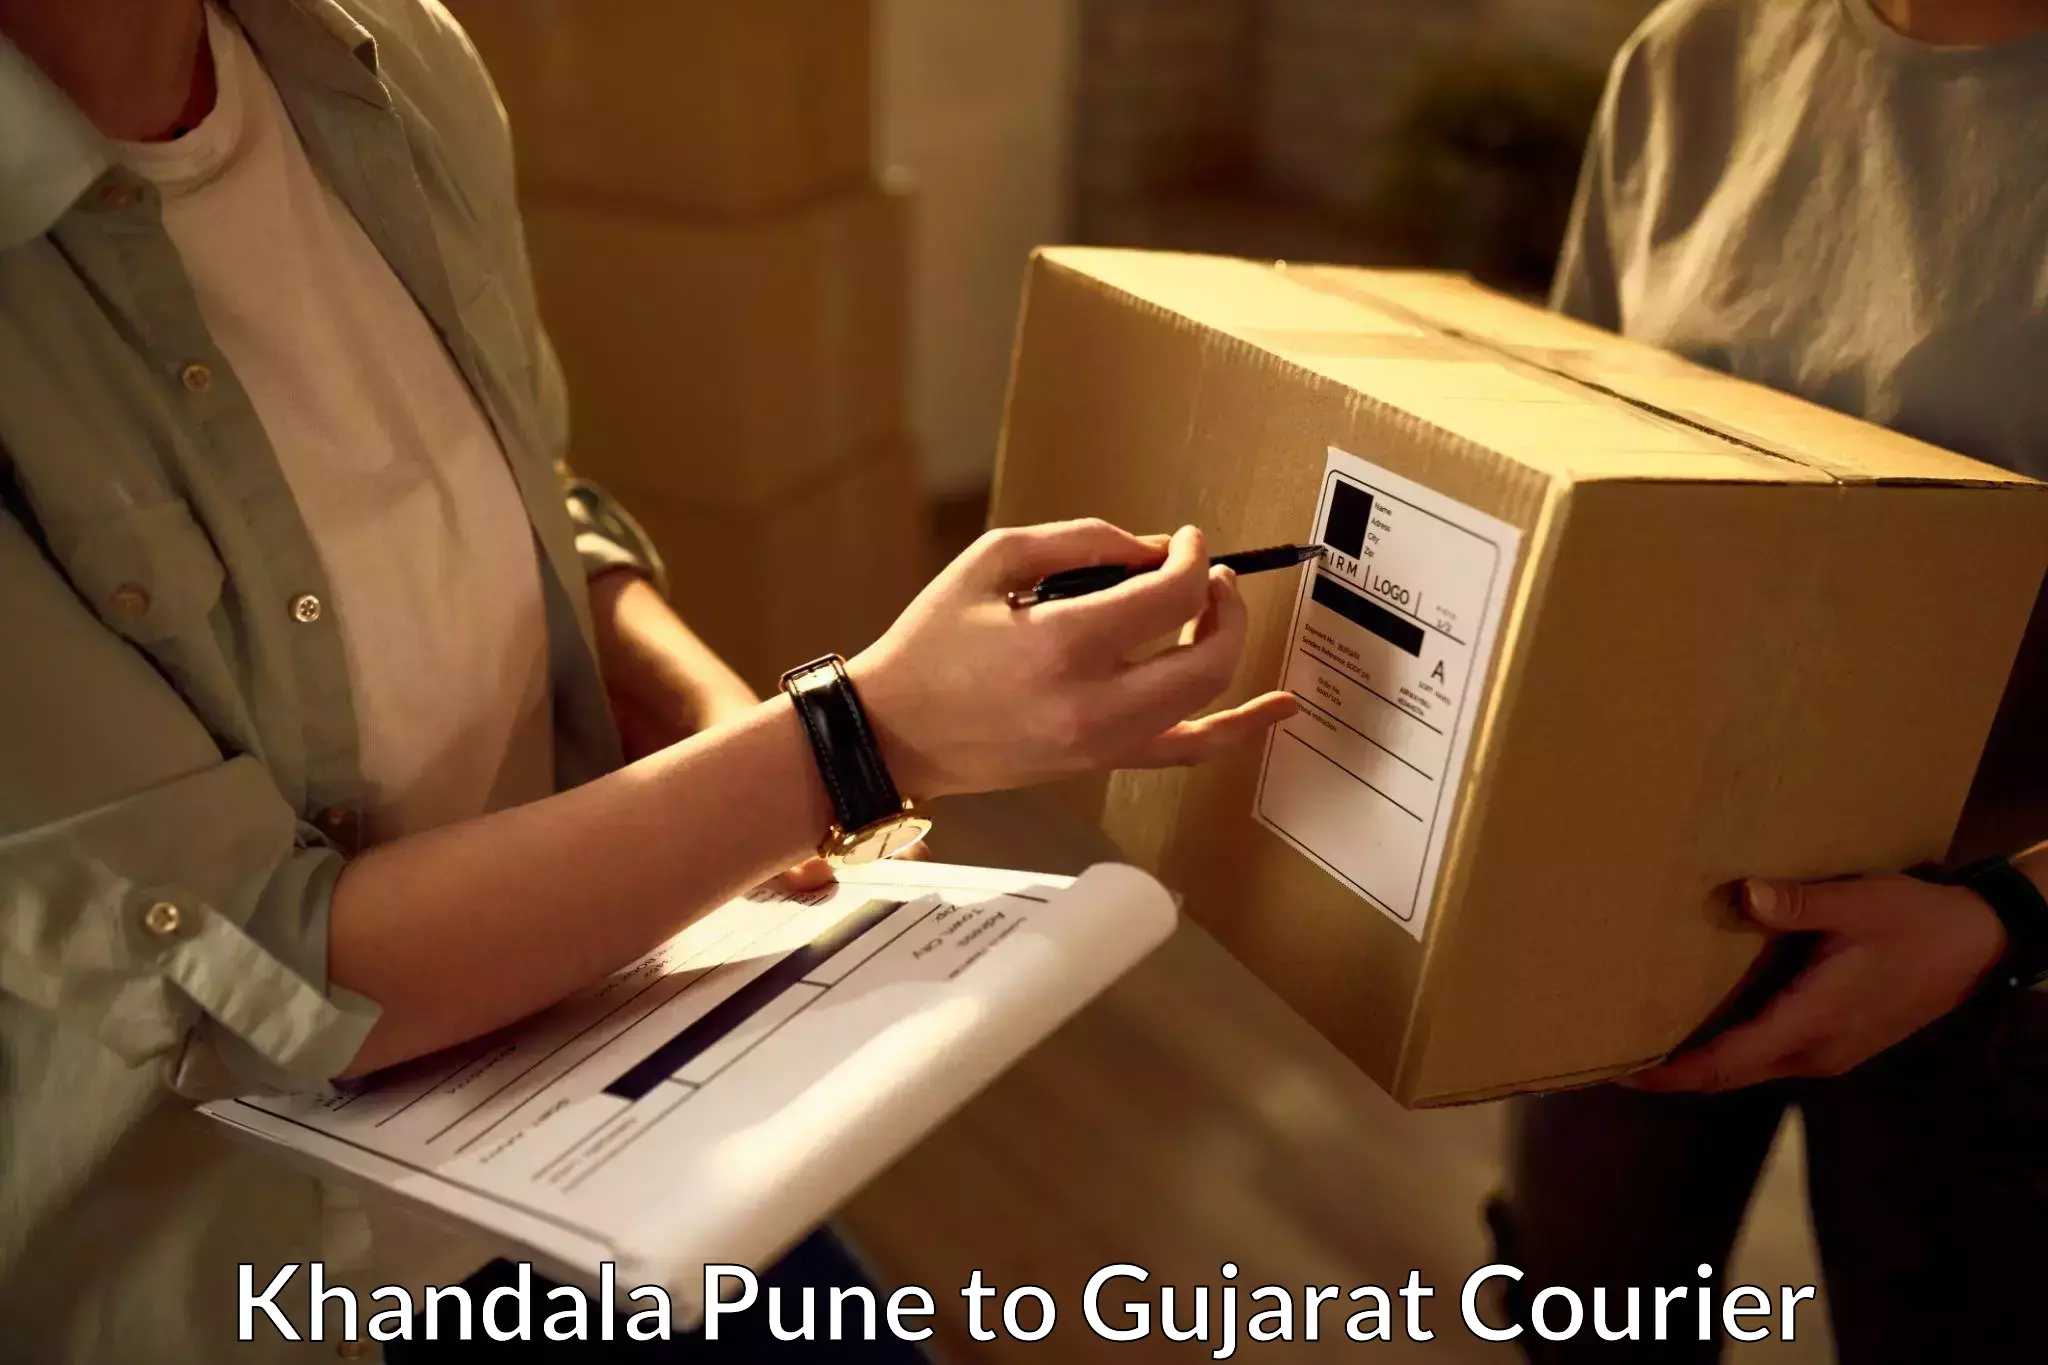 Efficient parcel service Khandala Pune to Fateganj